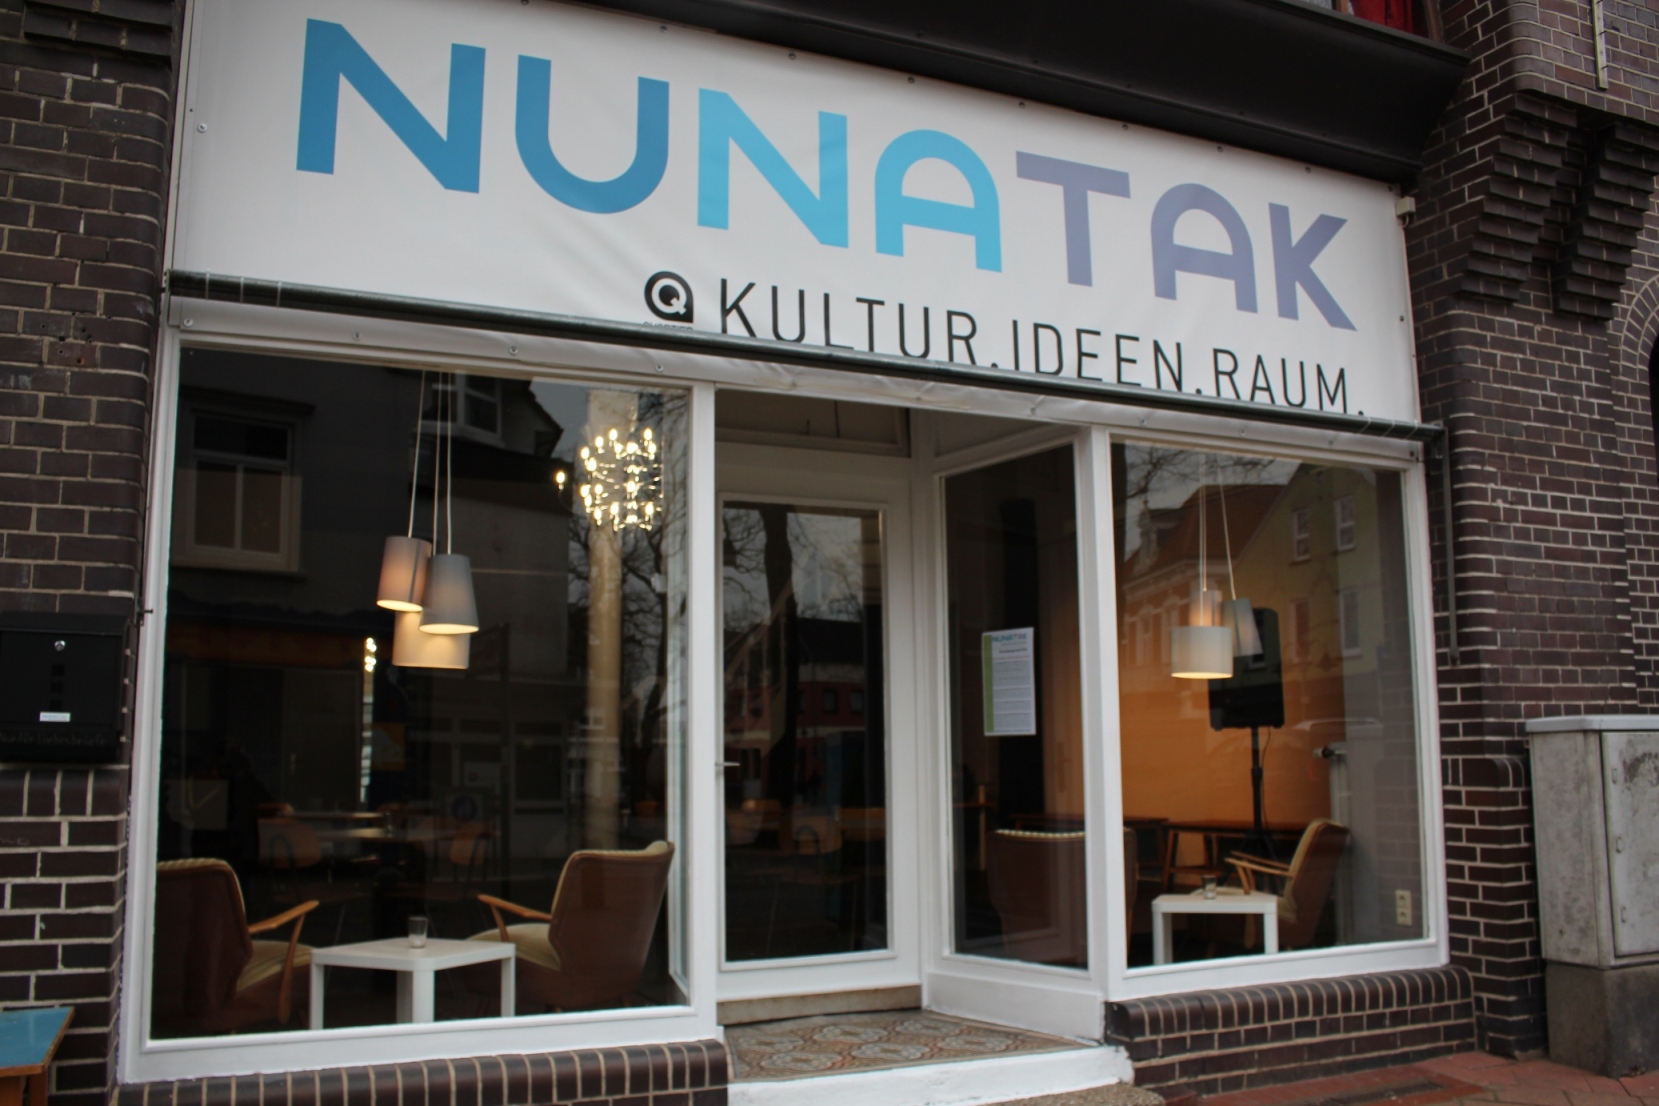 Nunatak -  Kultur.Ideen.Raum.